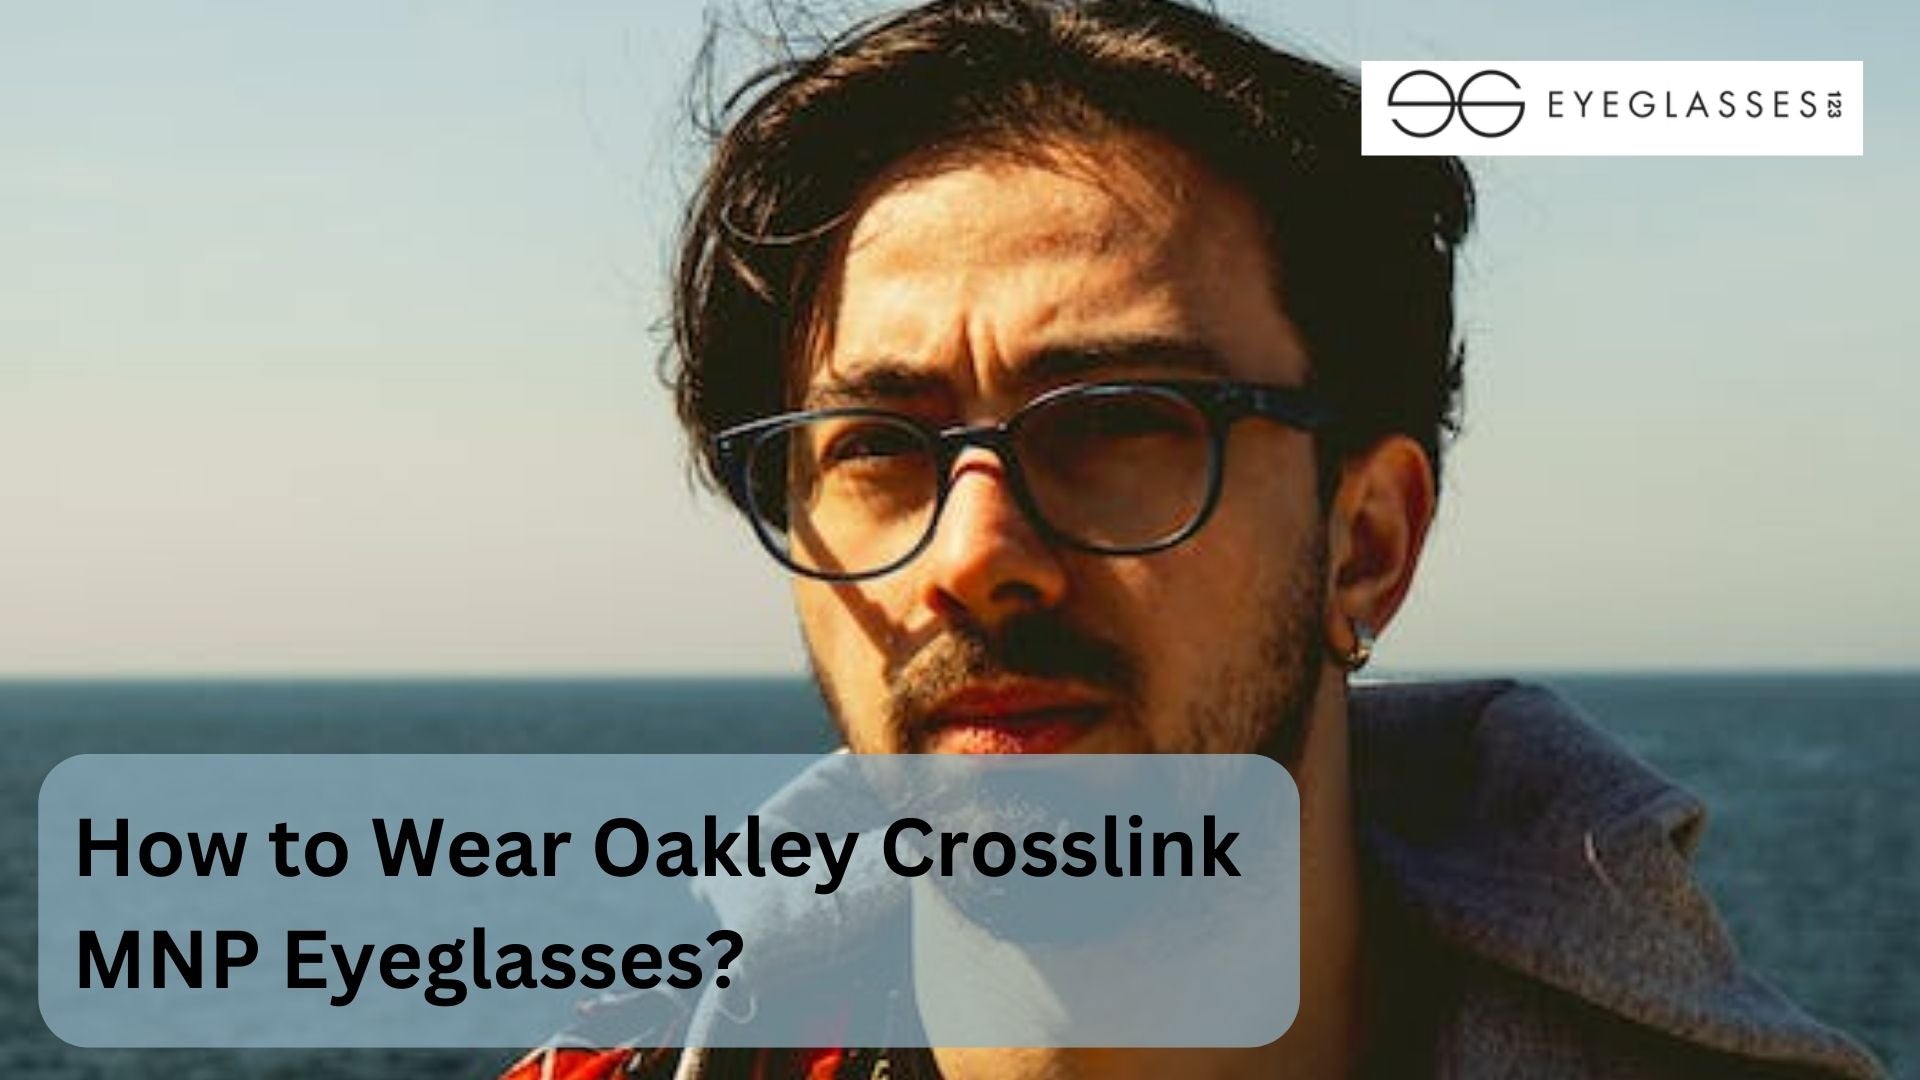 How to Wear Oakley Crosslink MNP Eyeglasses?